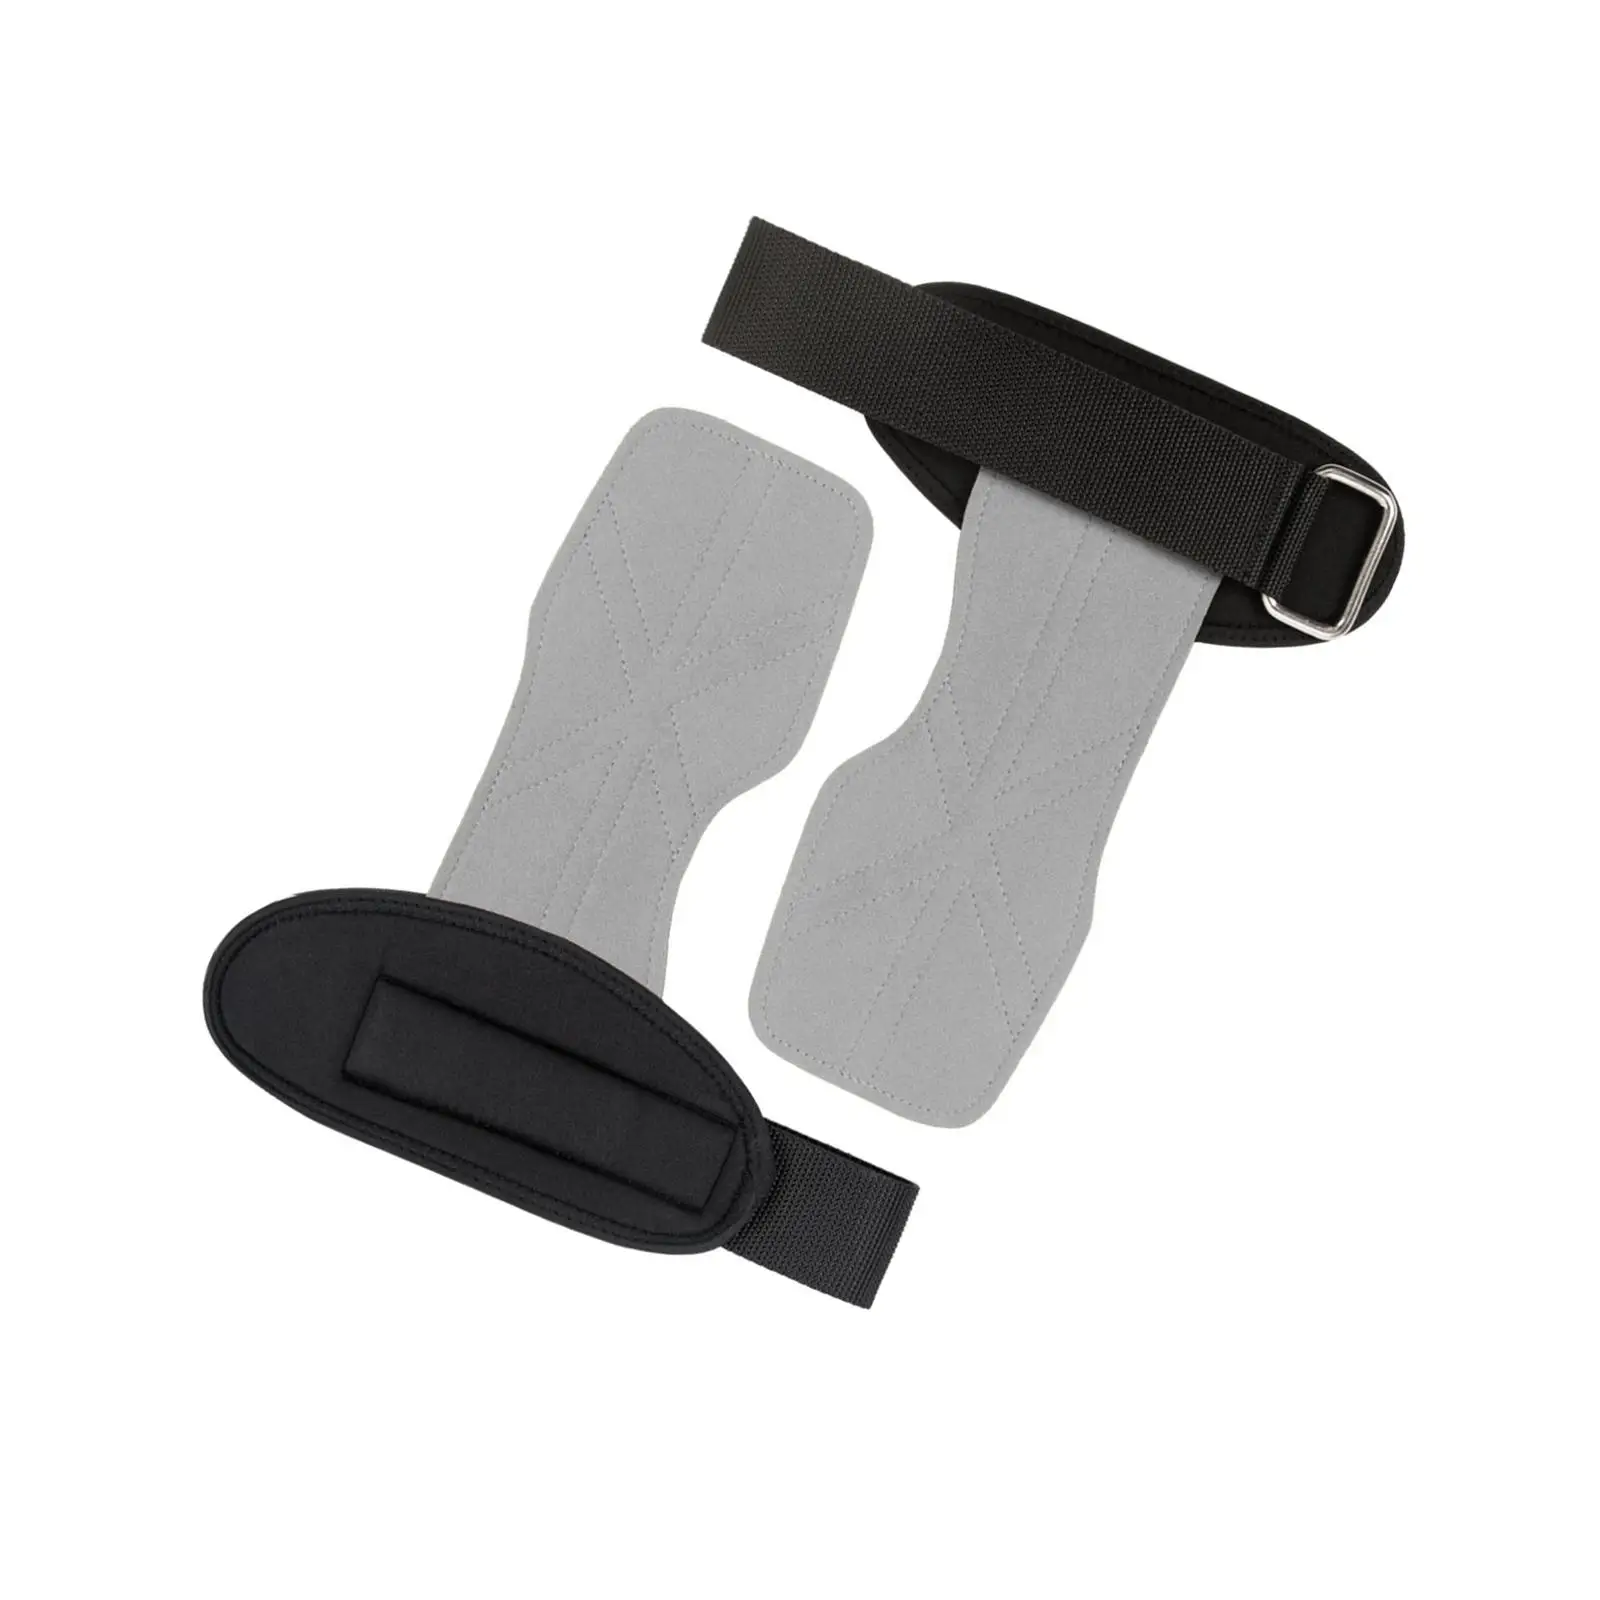 Lifting Wrist Straps Adjustable Breathable Non Slip Weight Lifting Hooks for Kettlebells Fitness Deadlift Dumbbell Bodybuilding